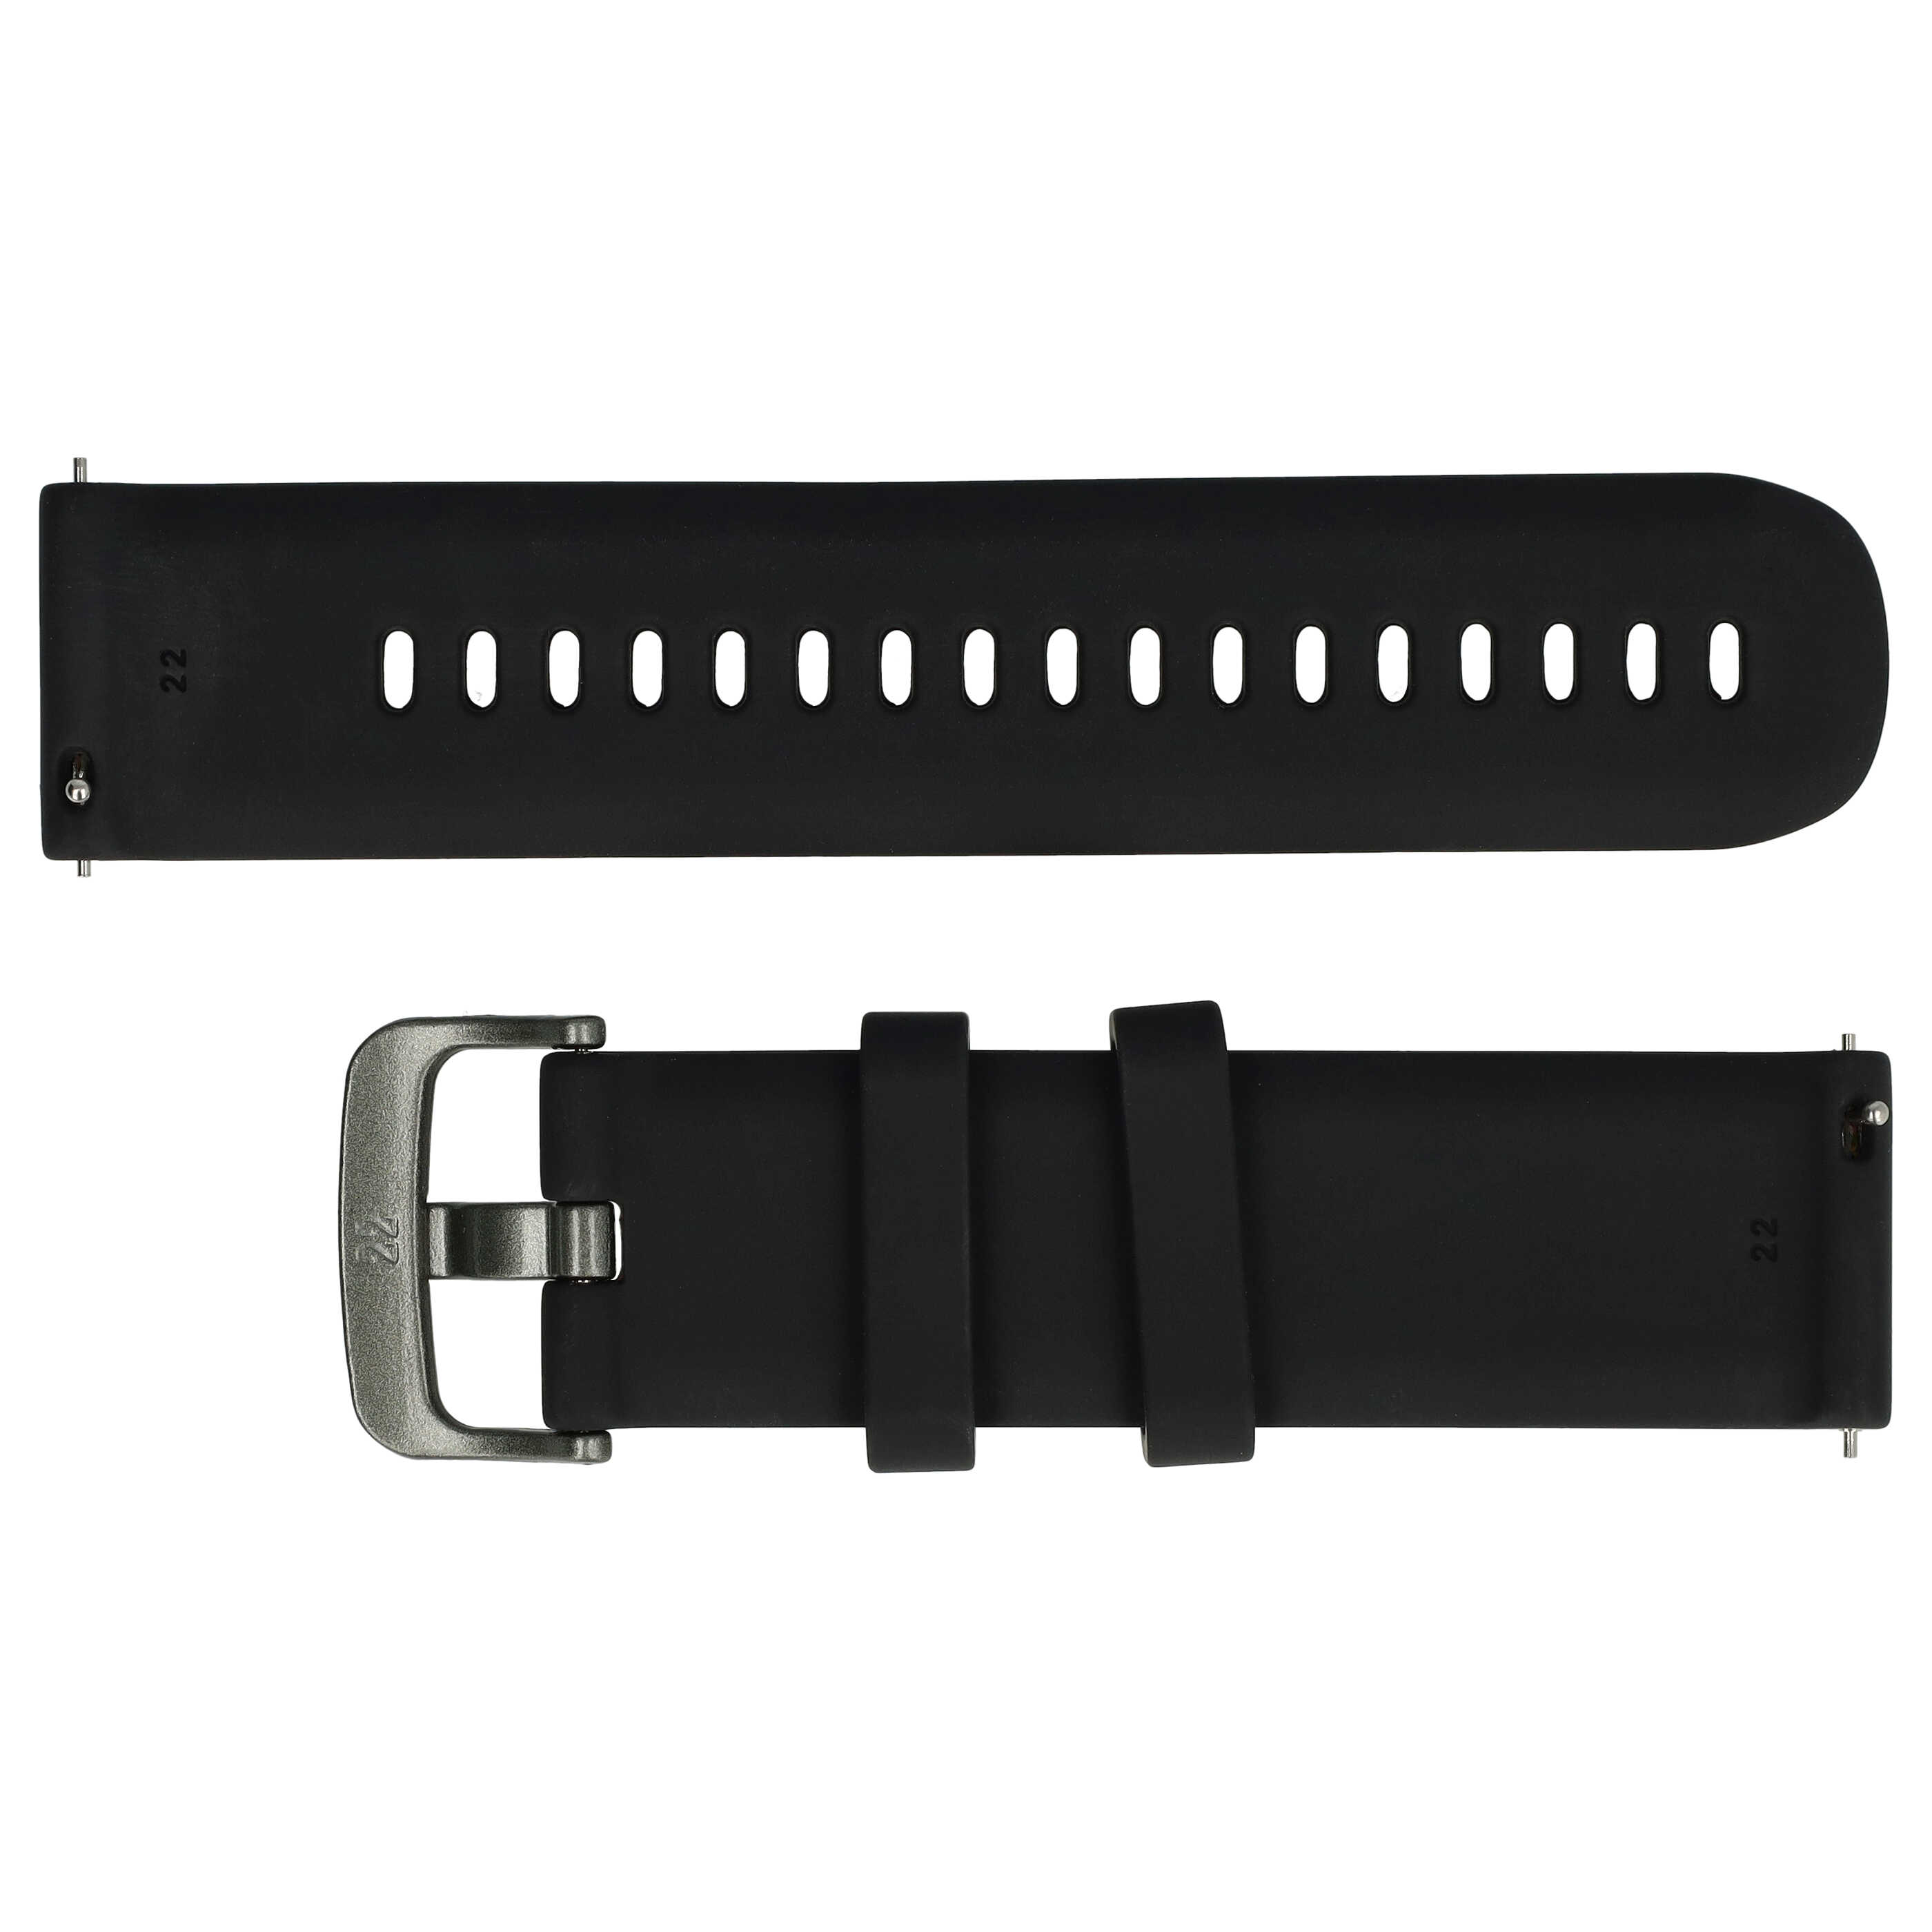 Armband S für Samsung Galaxy Watch Smartwatch - Bis 232 mm Gelenkumfang, Silikon, schwarz